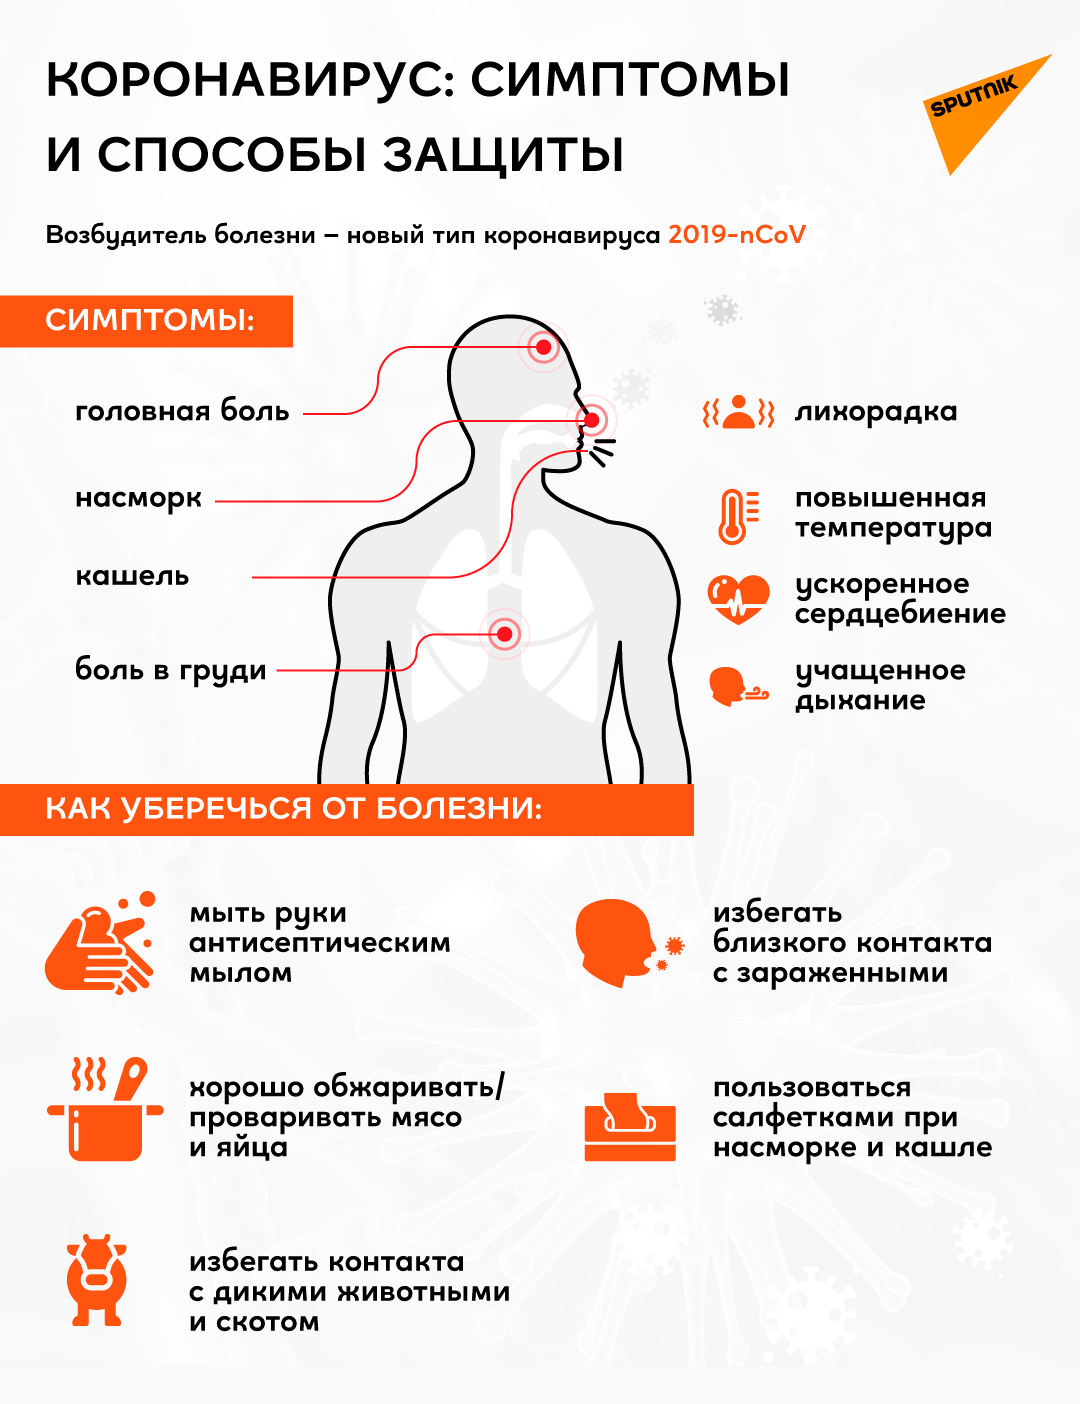 Коронавирус: симптомы и защита от него - Sputnik Грузия